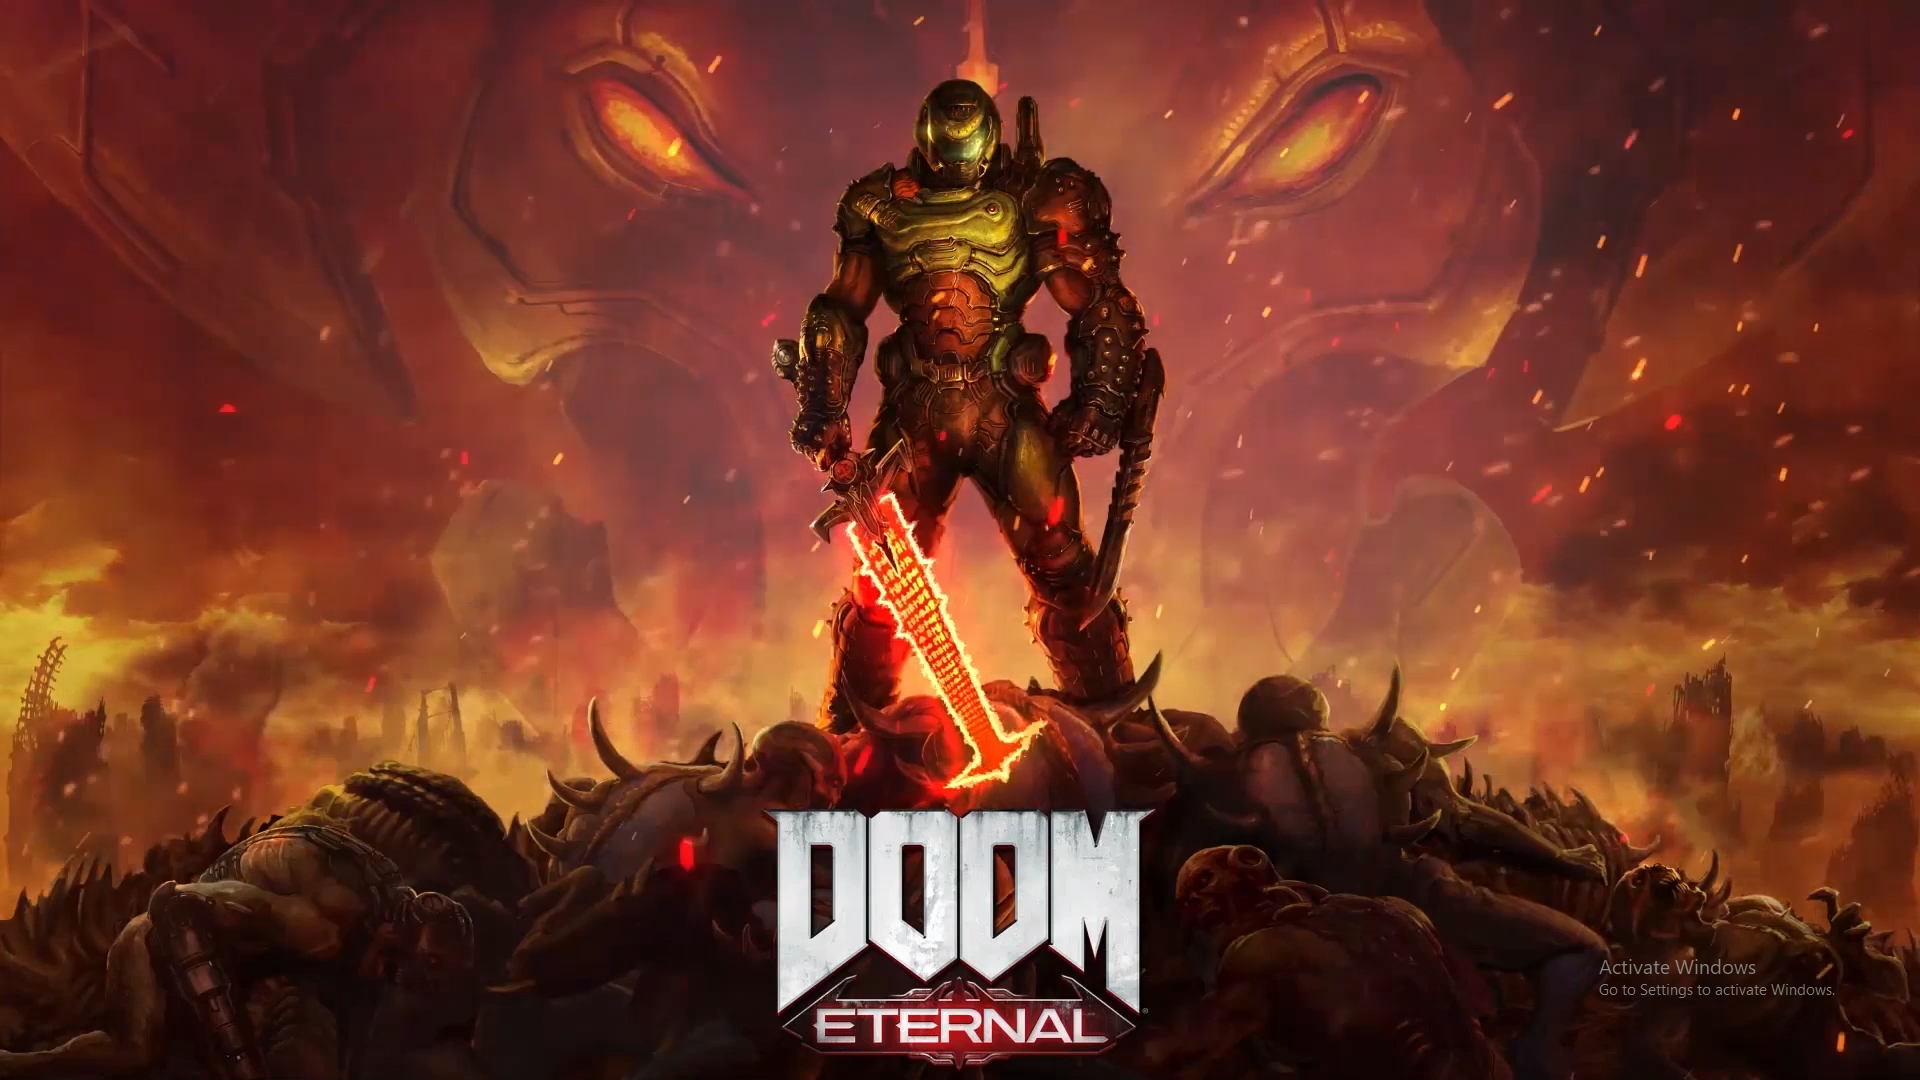 Doom guy DOOM Eternal Doom slayer portrait display HD phone wallpaper   Peakpx